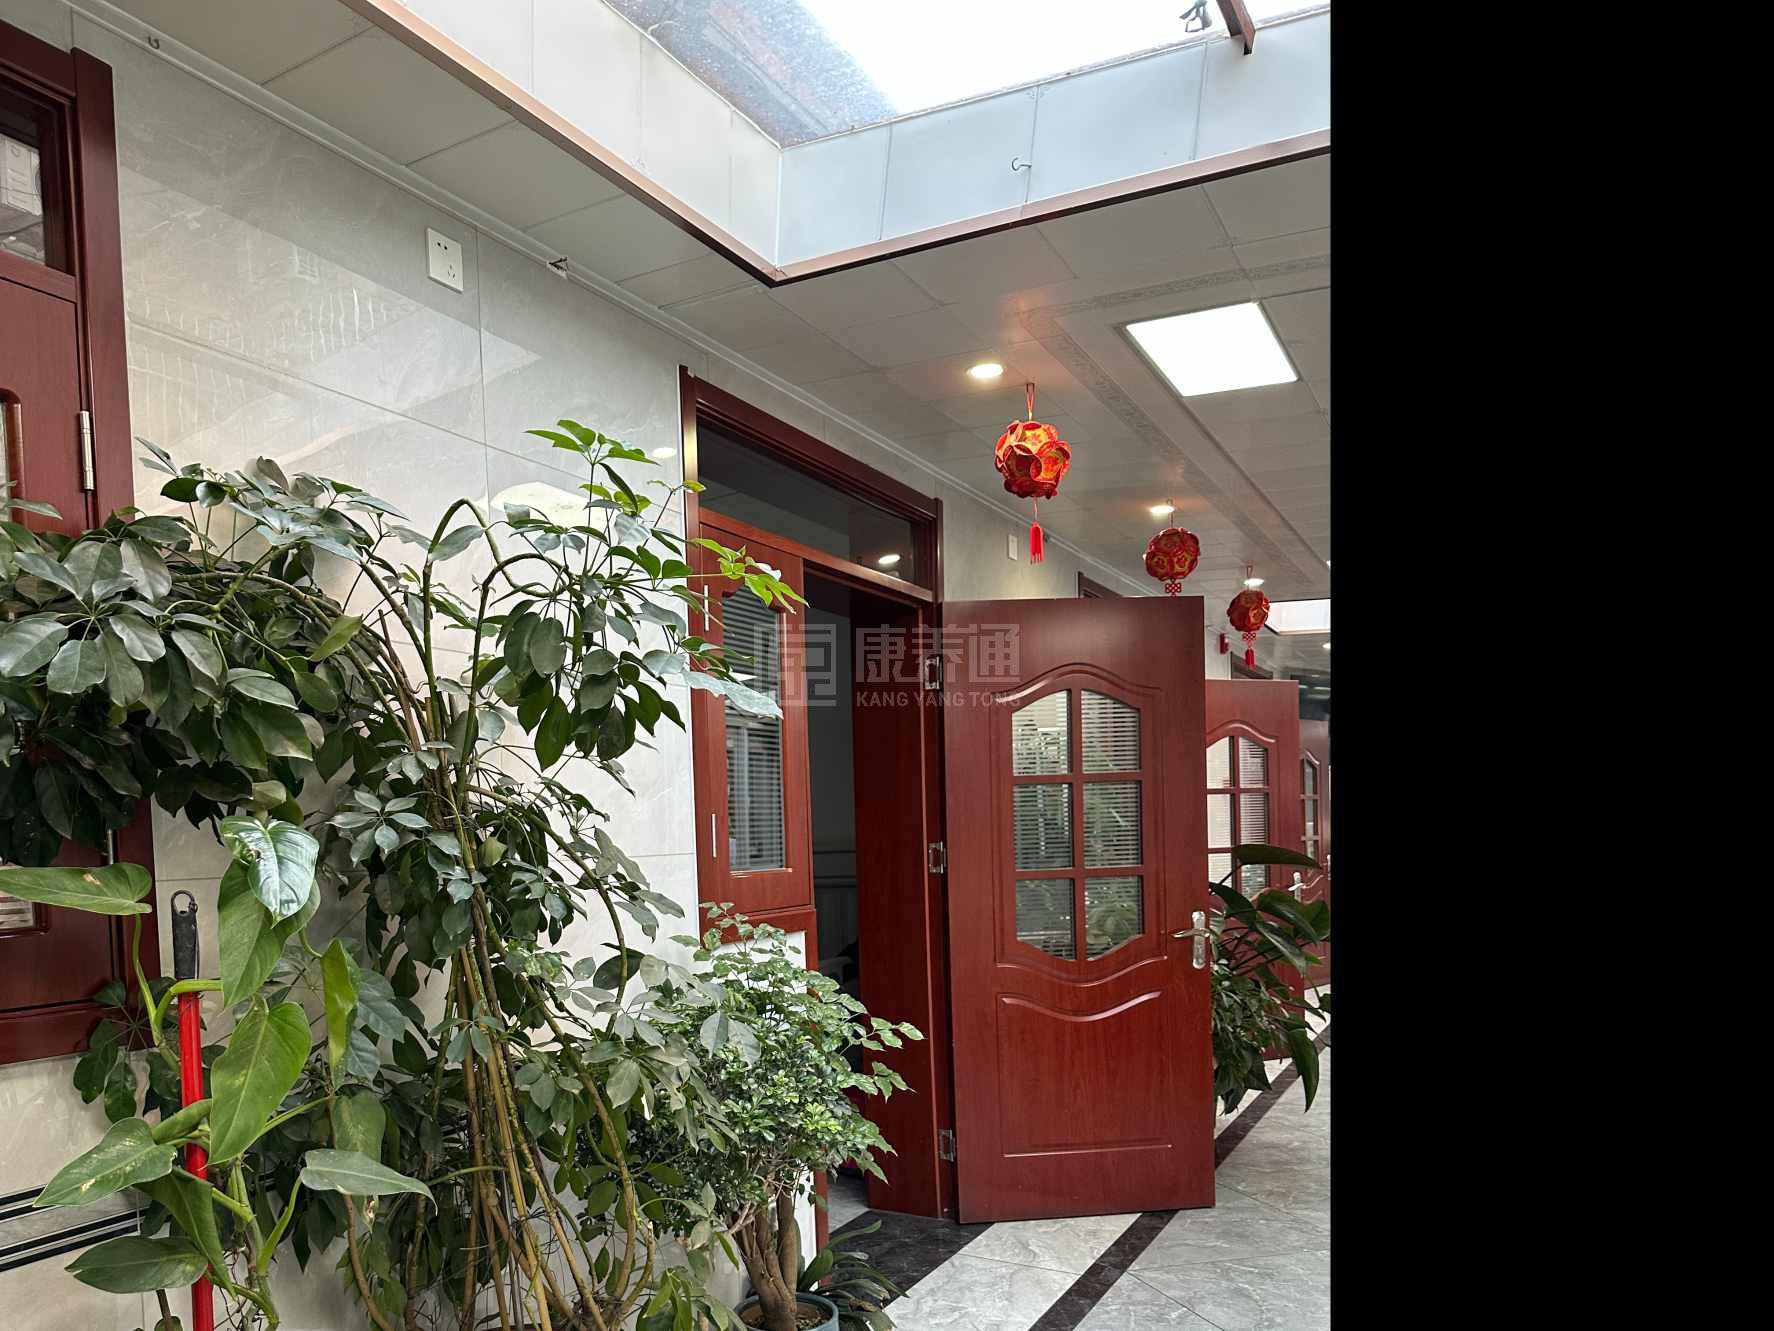 天津市红桥区益寿养老院服务项目图4让长者主动而自立地生活